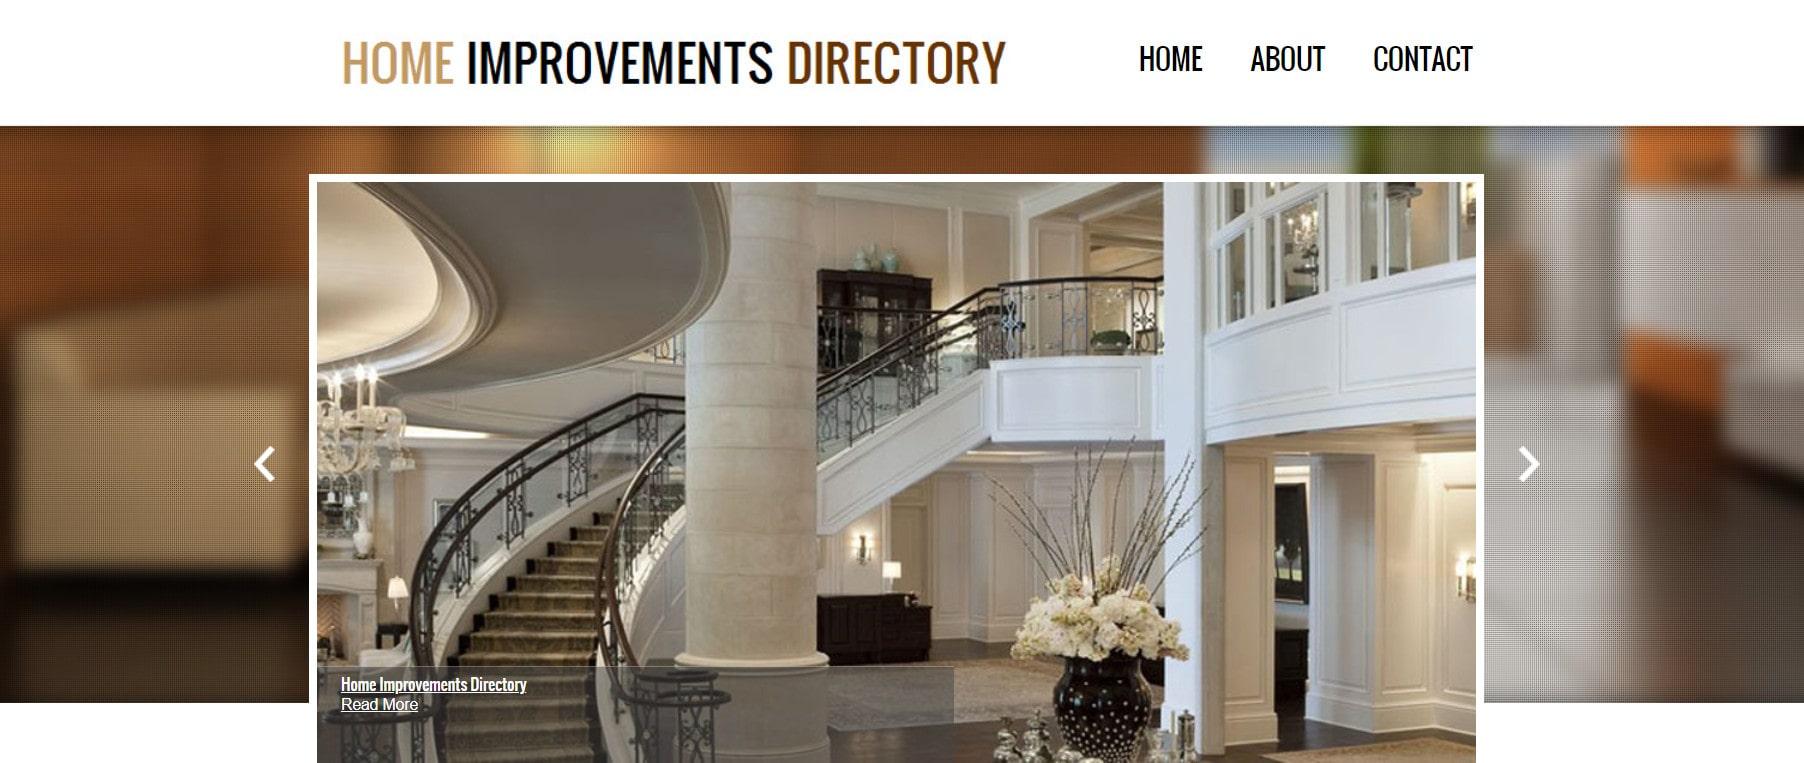 Home Improvements Directory com